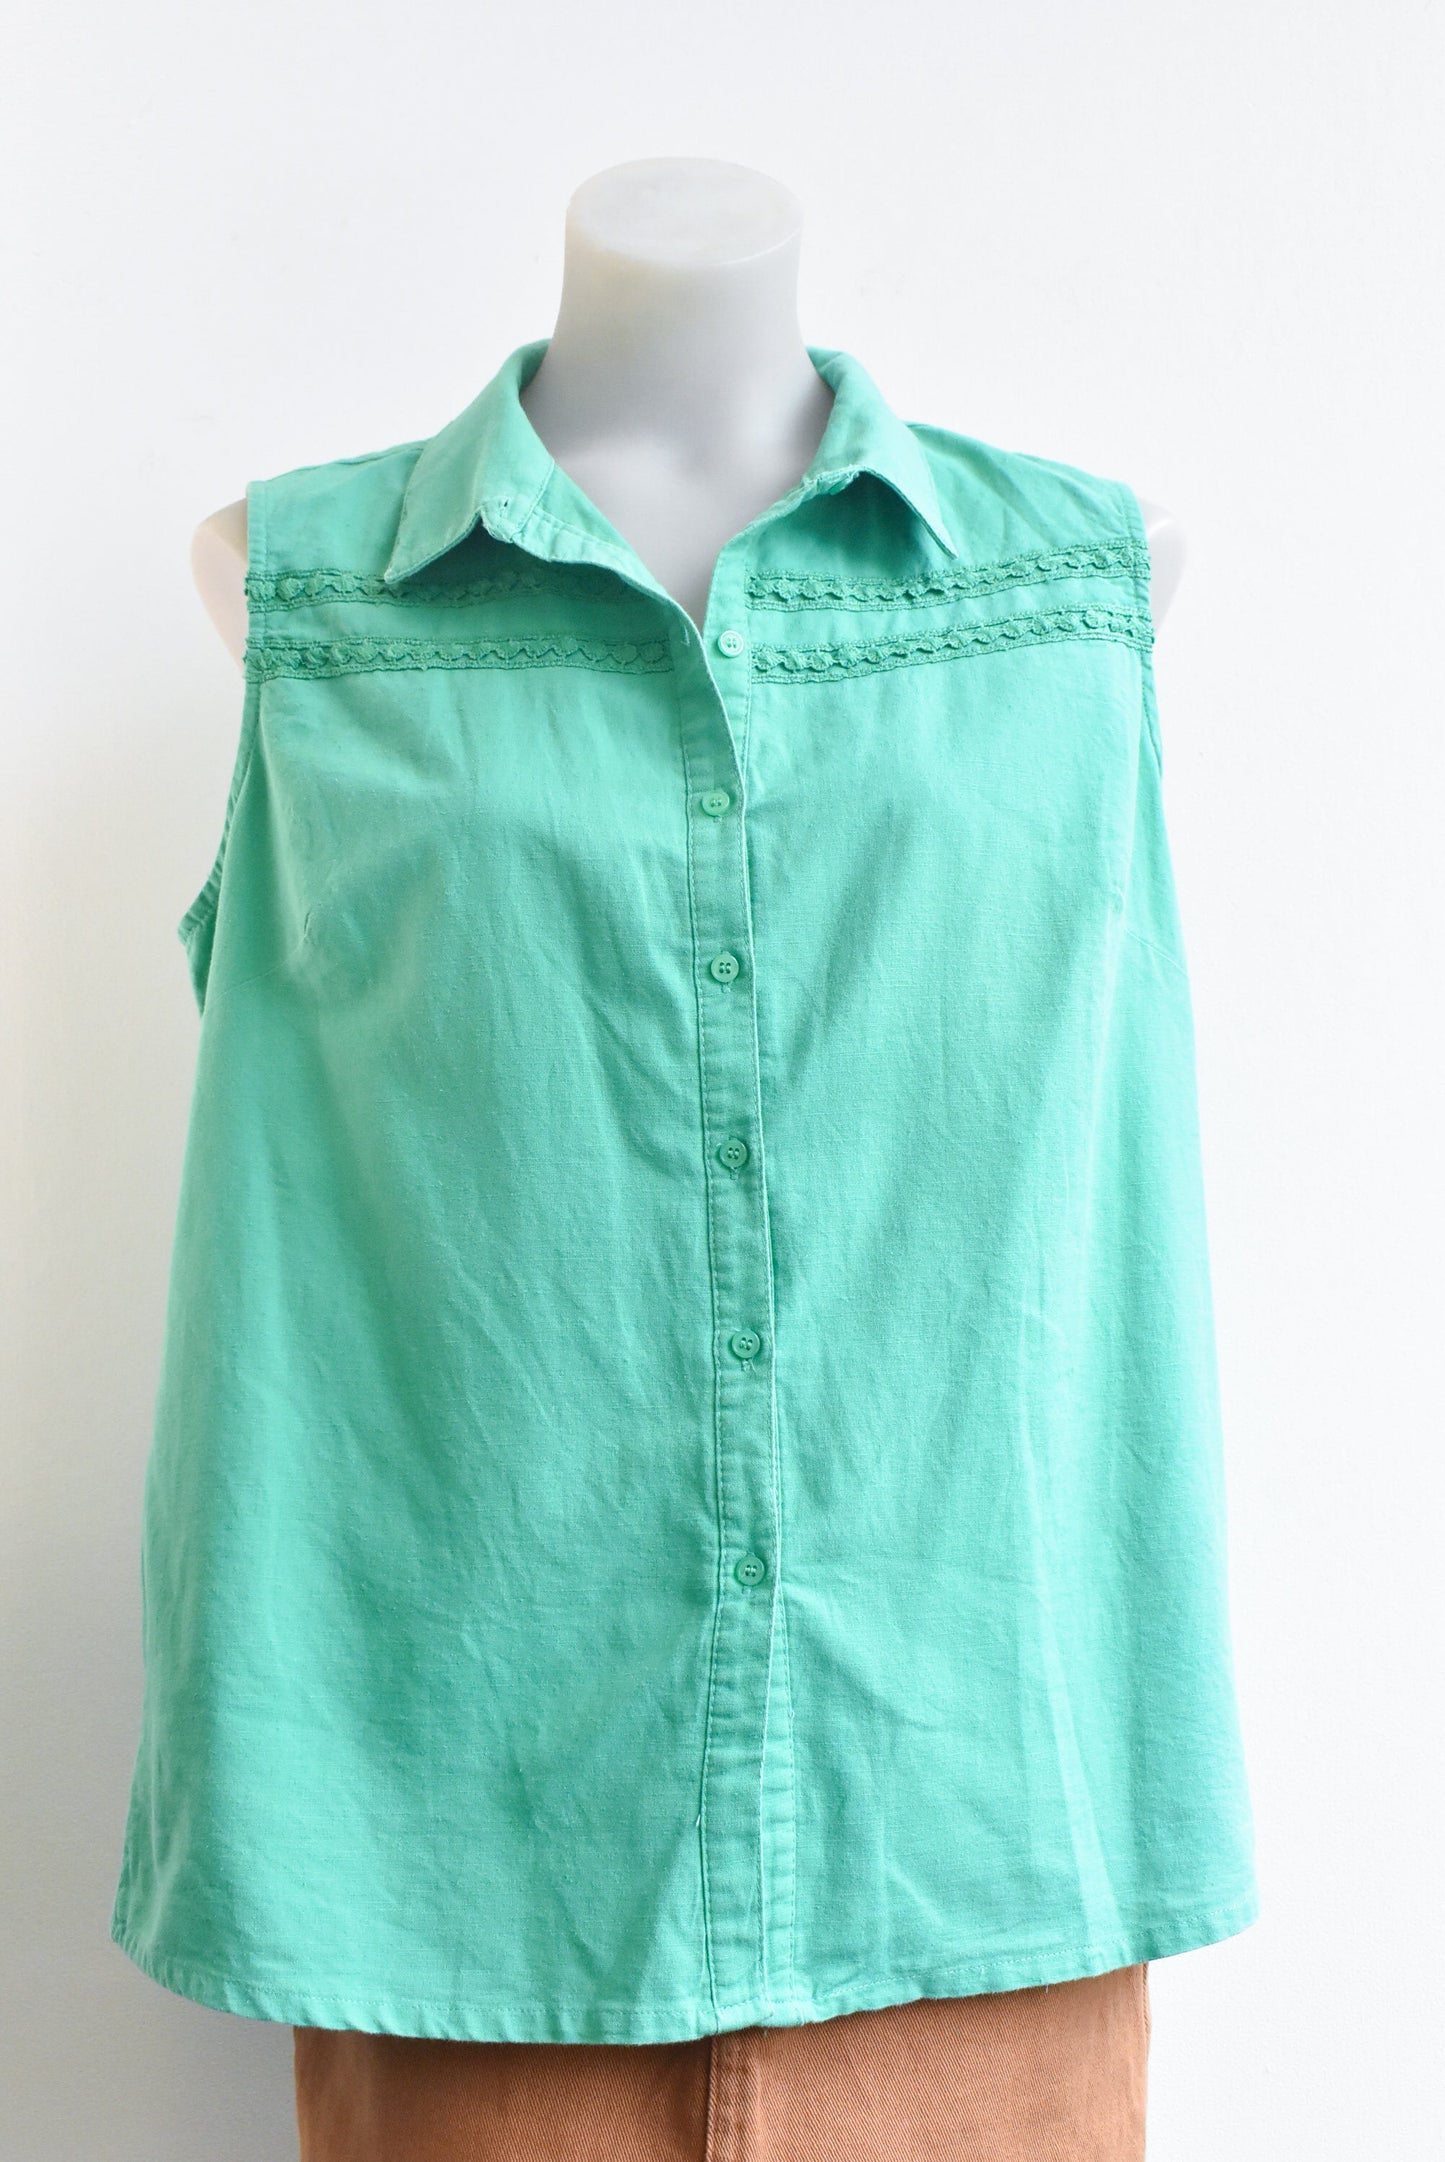 W Lane green linen-blend sleeveless shirt, size 14